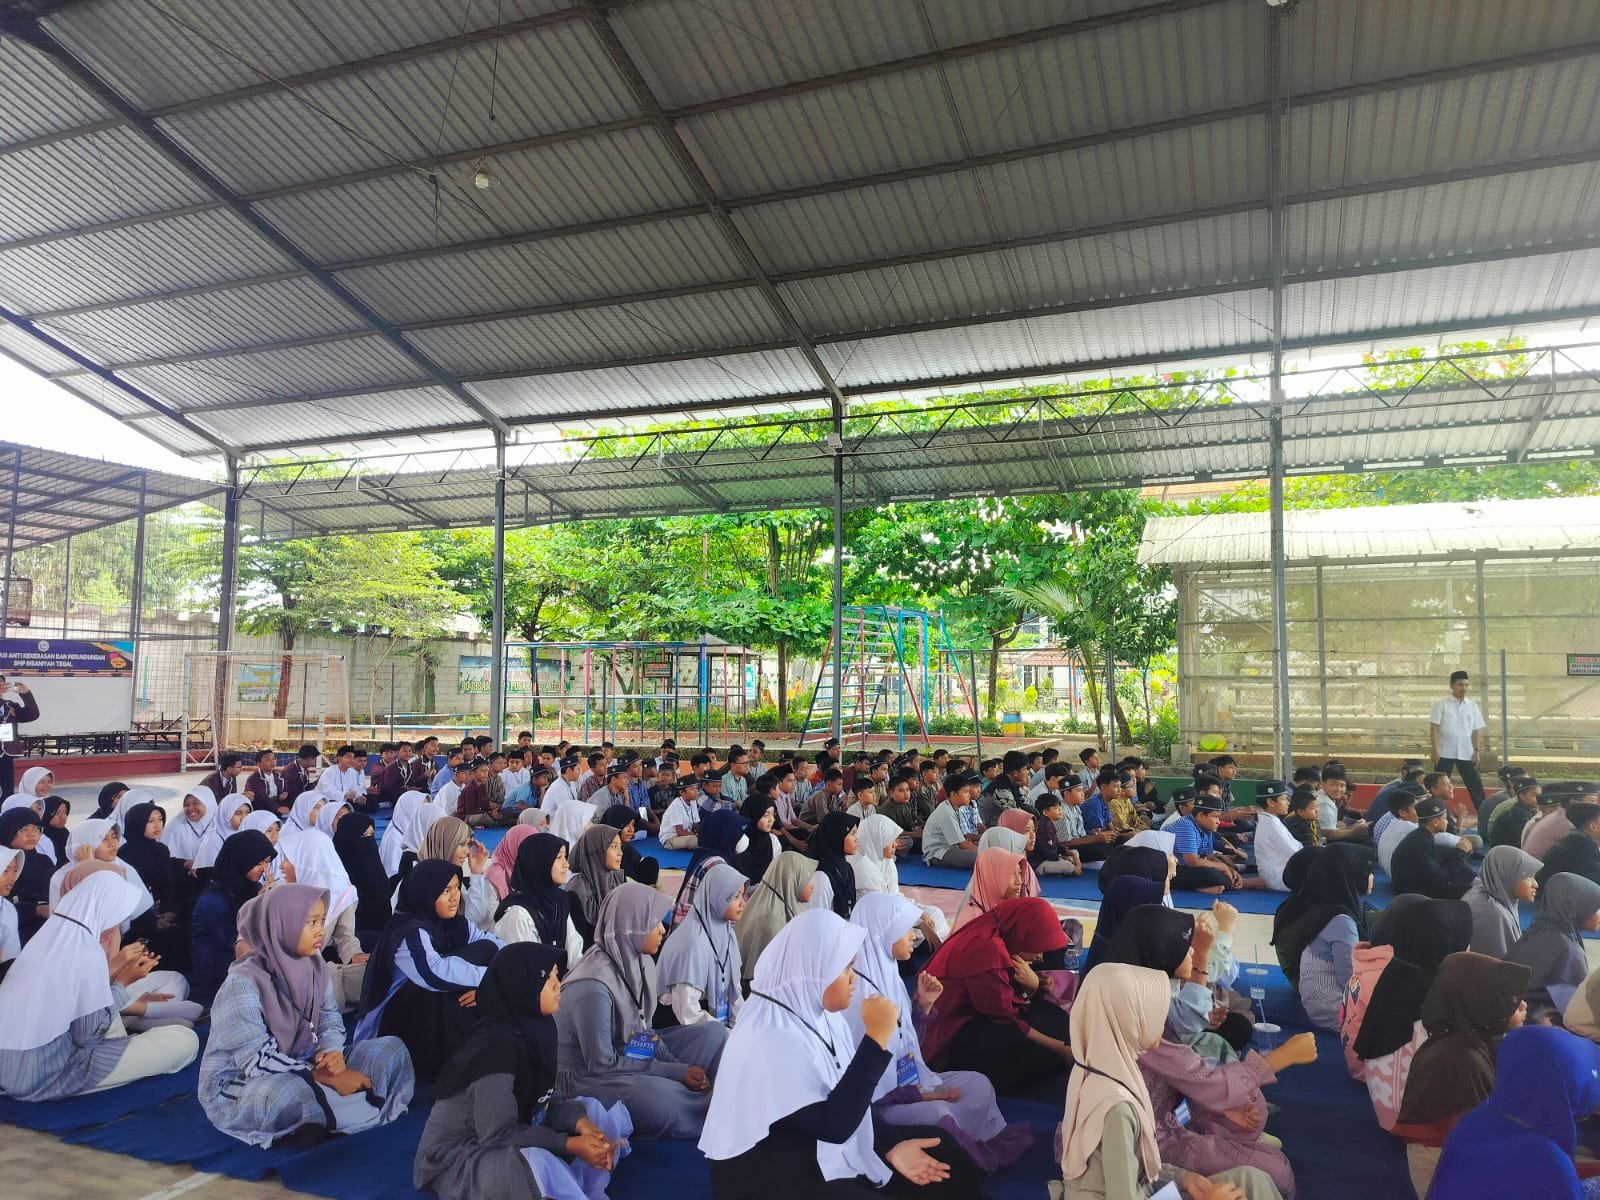 191 Siswa baru SMP Ihsaniyah Tegal Mengikuti Kegiatan Matrikulasi Sekolah